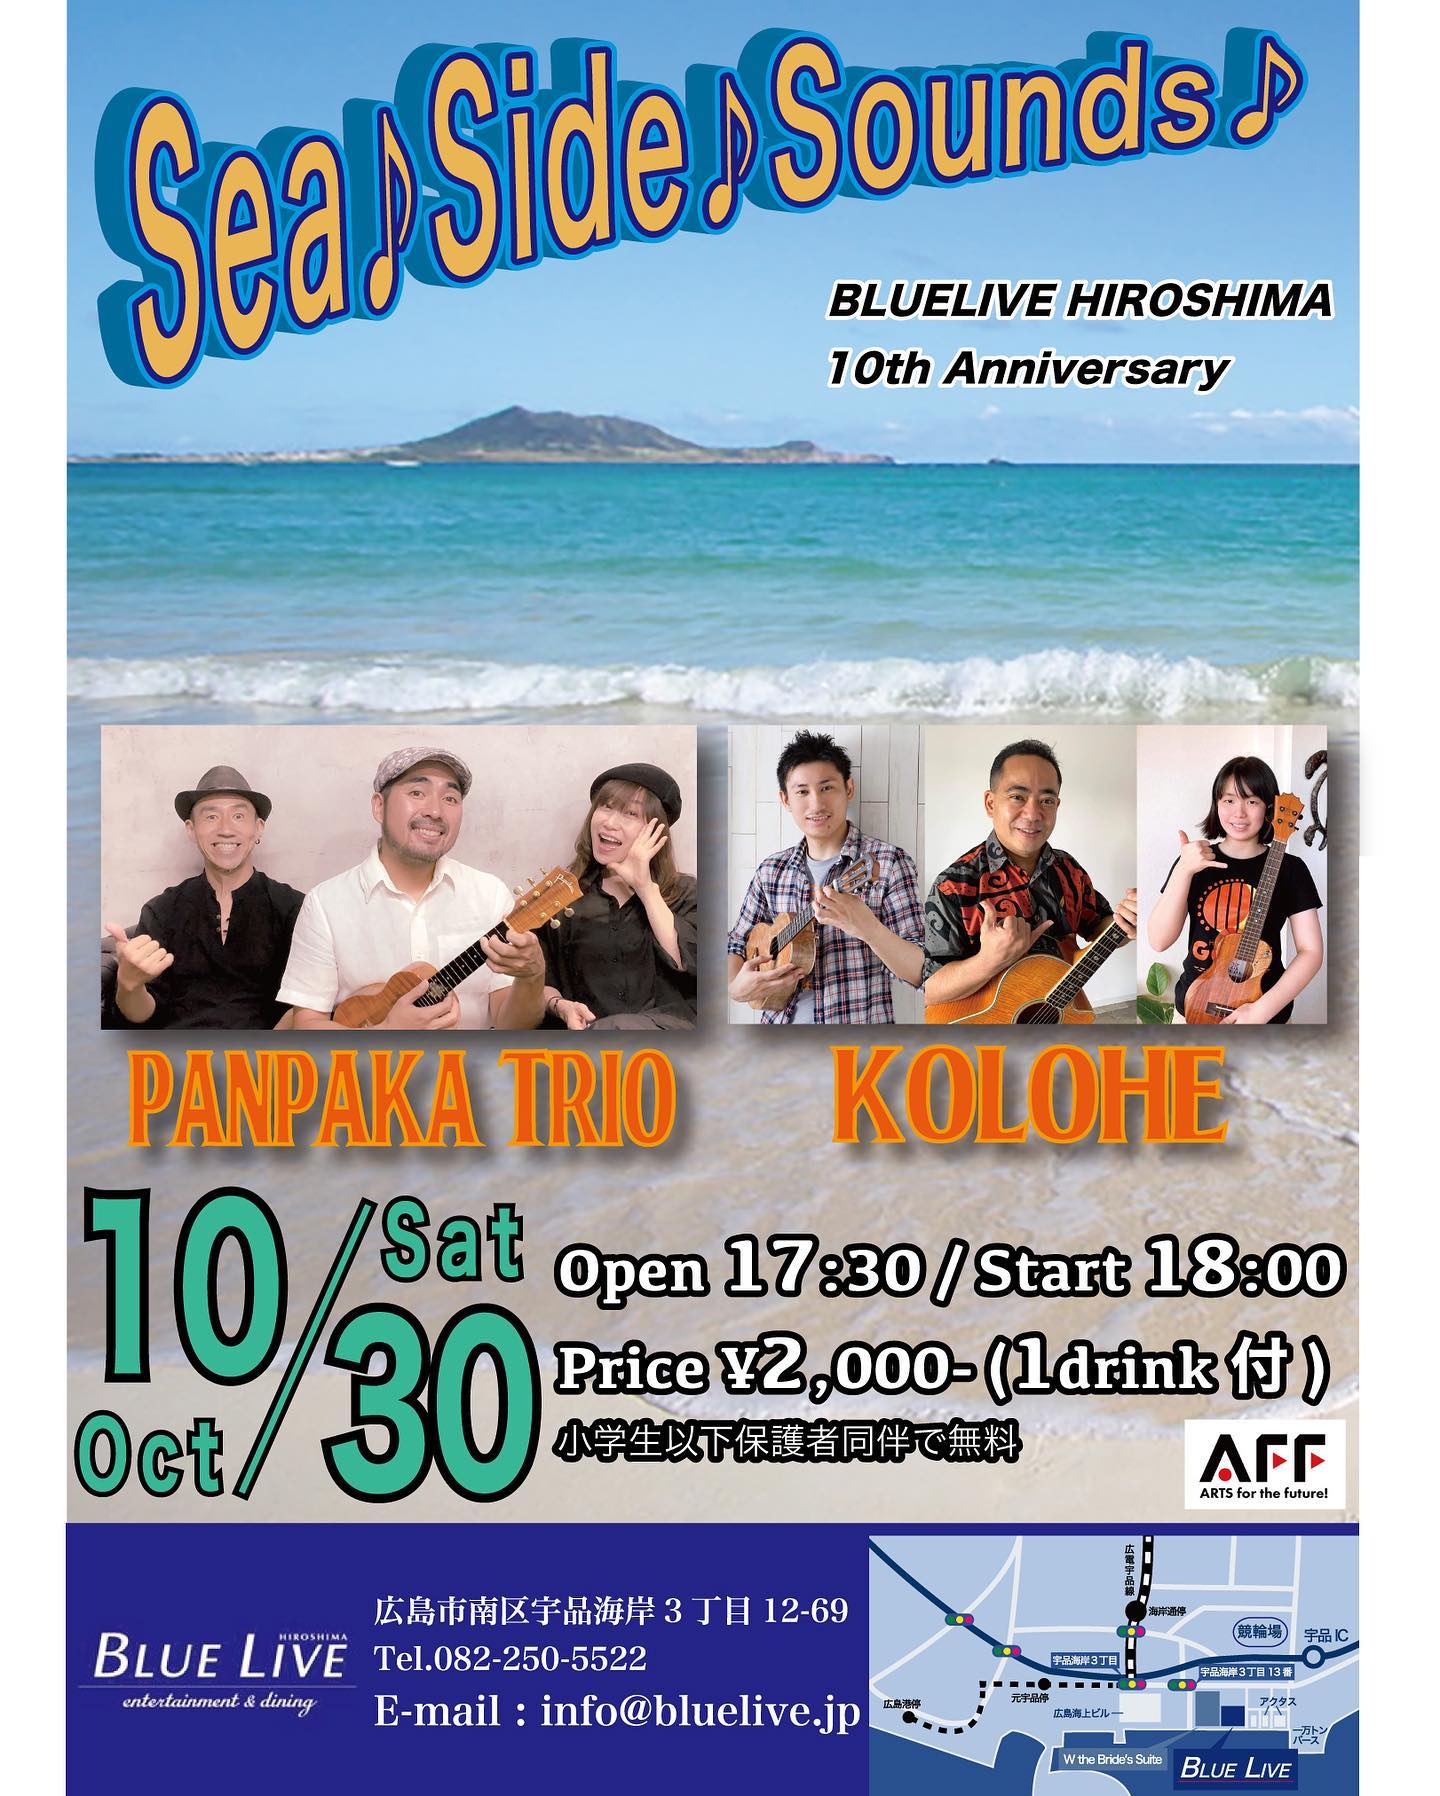 ライブの告知です。今年で10周年を迎えるBLUELIVE HIROSHIMAの10周年イベントの一環としてぱんぱかトリオでライブします！ハワイアンバンドKOLOHEも出演。海辺のライブハウスBLUELIVE HIROSHIMAで、これまた海辺が似合う音楽をお楽しみください〜♪ご予約はhttps://bluelive.jp/schedule/detail.php?id=2403からもできますがカワムラ本人に連絡でも受け付けます。よろしくお願いしますー！＝＝＝＝＝＝＝＝＝＝＝＝︎10月30日(土)Sea♪Side♪Sounds♪場所:BULELIVE HIROSHIMA(広島市南区宇品海岸3丁目12-69)Tel:082-250-5522出演：ぱんぱかトリオ／KOLOHEOpen 17:30／Start 18:00Price ¥2,000-(1Drink付)[お問合せ・受付]12：00～19：00（水曜定休）[E-mailでのお問い合わせ]info@bluelive.jp★ガイドラインに沿った運営を行いますマスクを着用されない方の入場はお断りします。また、入場時には検温・消毒液を手指に噴霧させていただきます。手洗い実施、咳エチケットなど、感染防止のためご協力をお願いいたします。＝＝＝＝＝＝＝＝＝＝＝＝＝